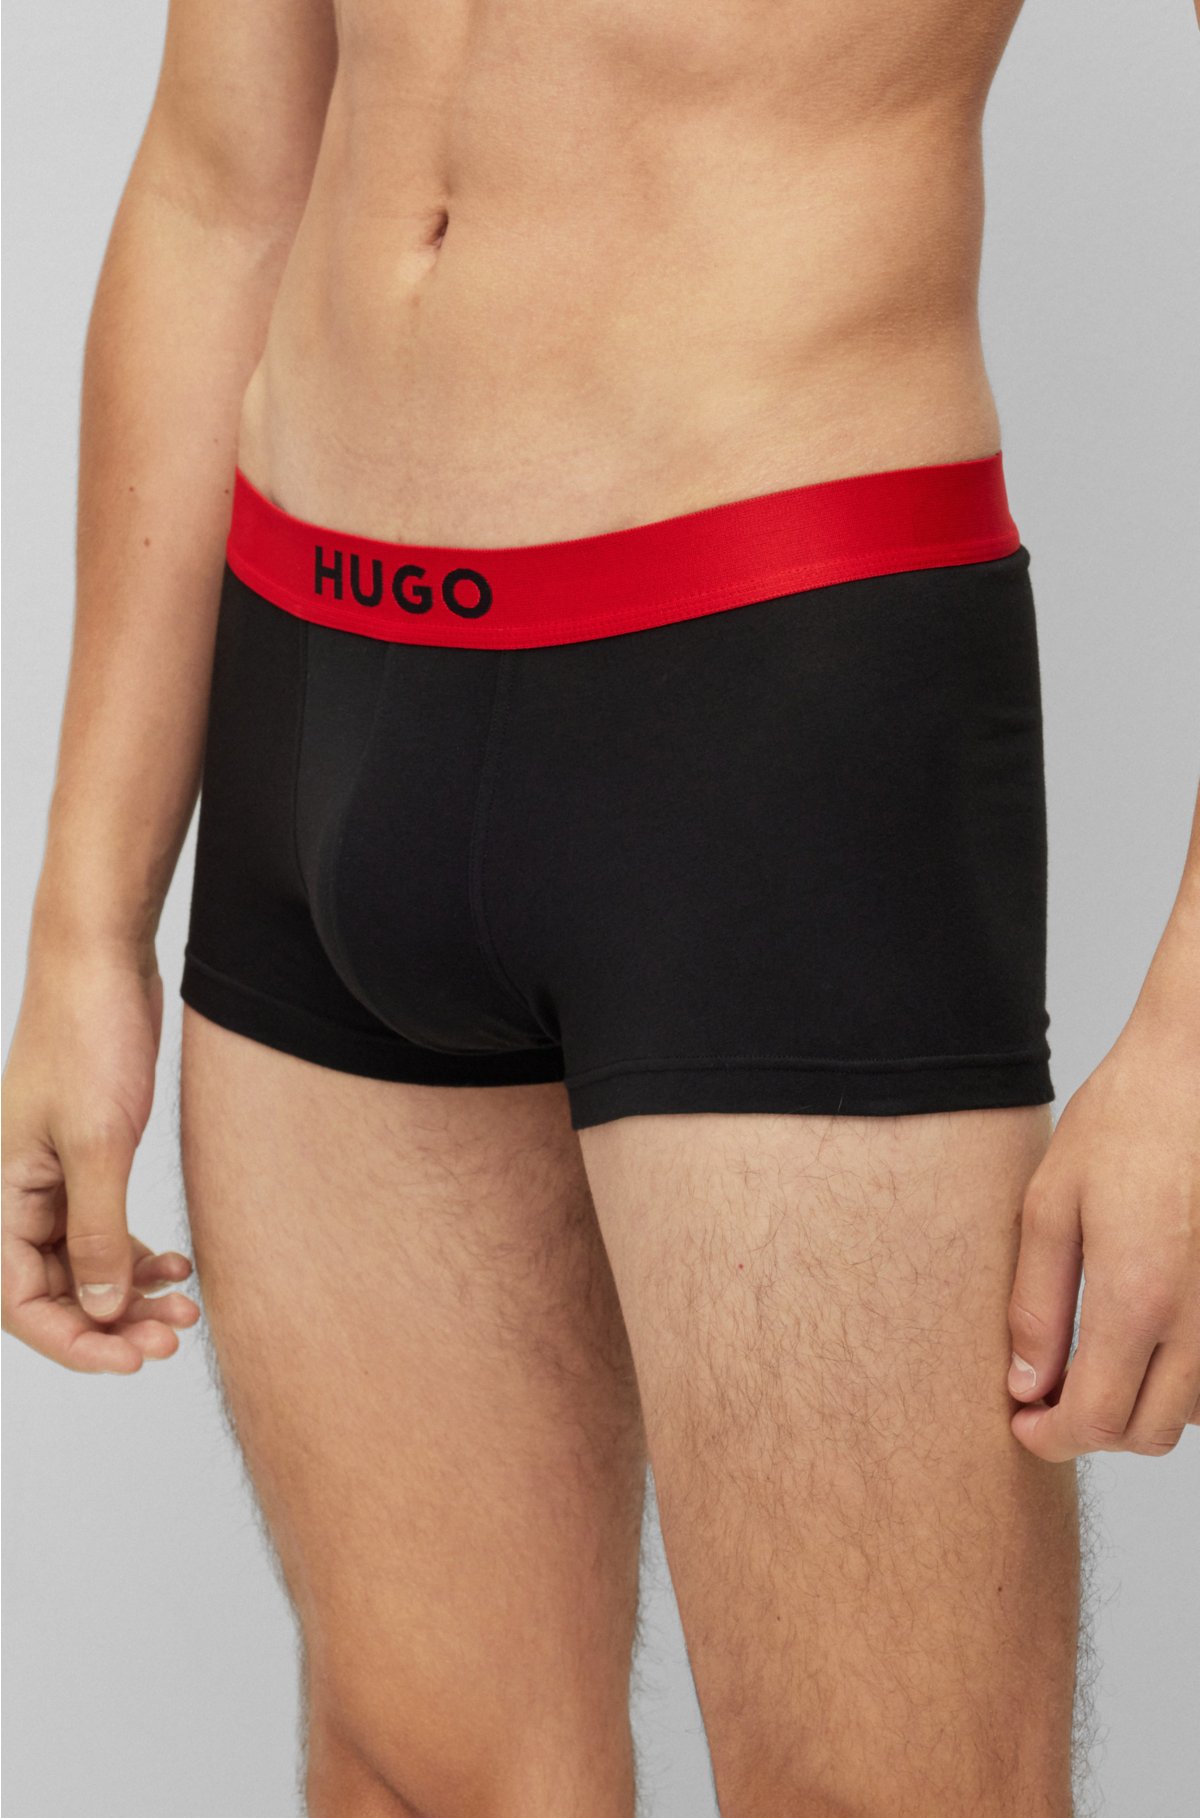 Buy Go Yoga Cotton Innerwear, Men Underwear Combo Pack, Trunk for Men  Pack of 2 + Vest for Men Pack of 2